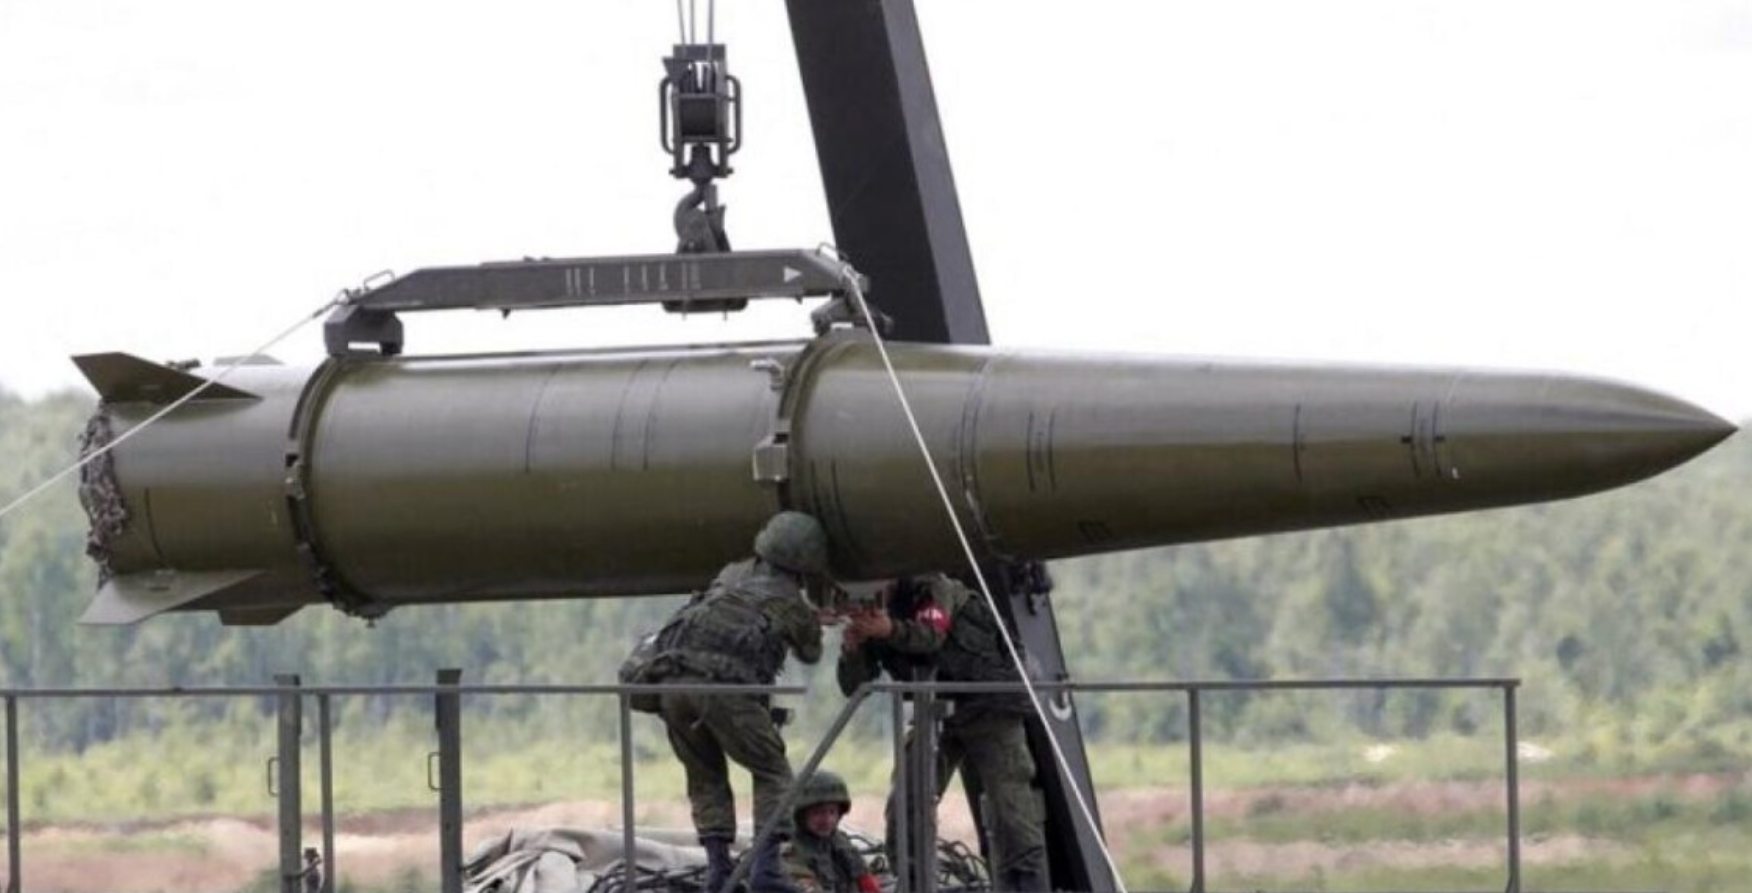 Ядерное оружие в Беларуси - Алексей Громов заявил, что Россия еще не доставила боеголовки на территорию Республики. - фото 1